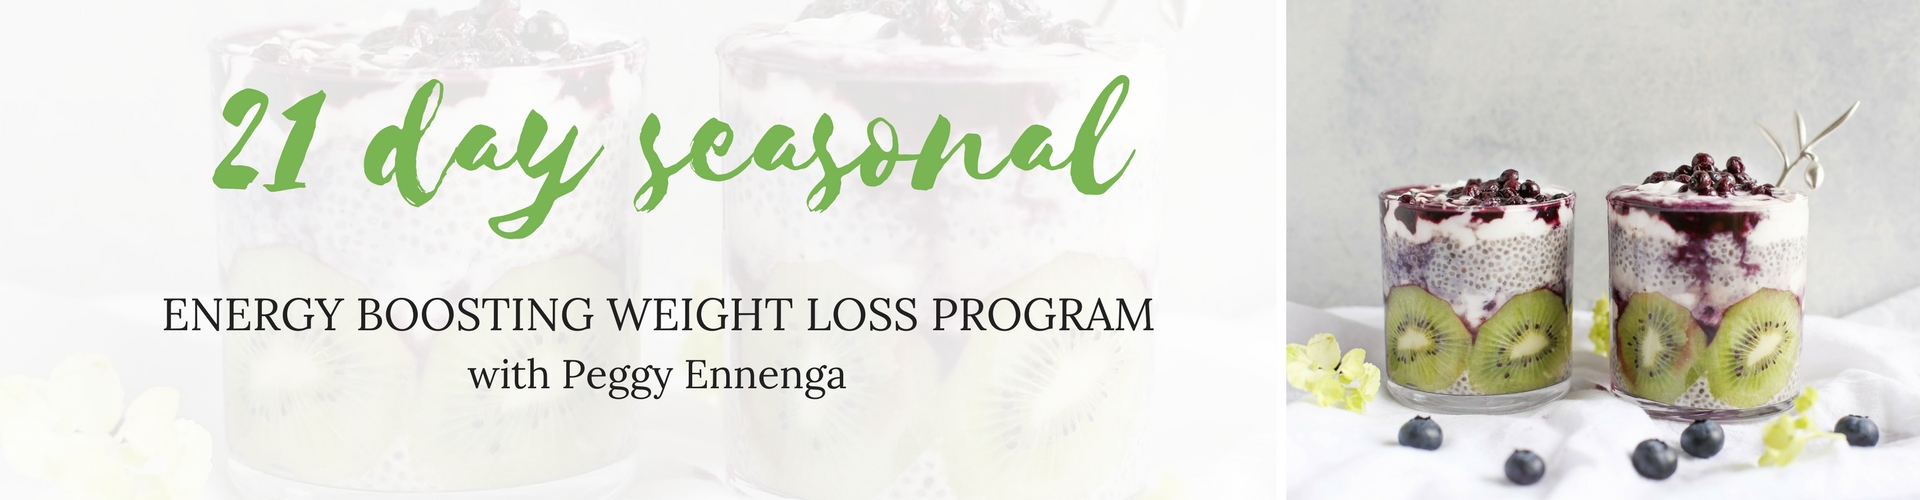 21 Day Seasonal Weight Loss Program